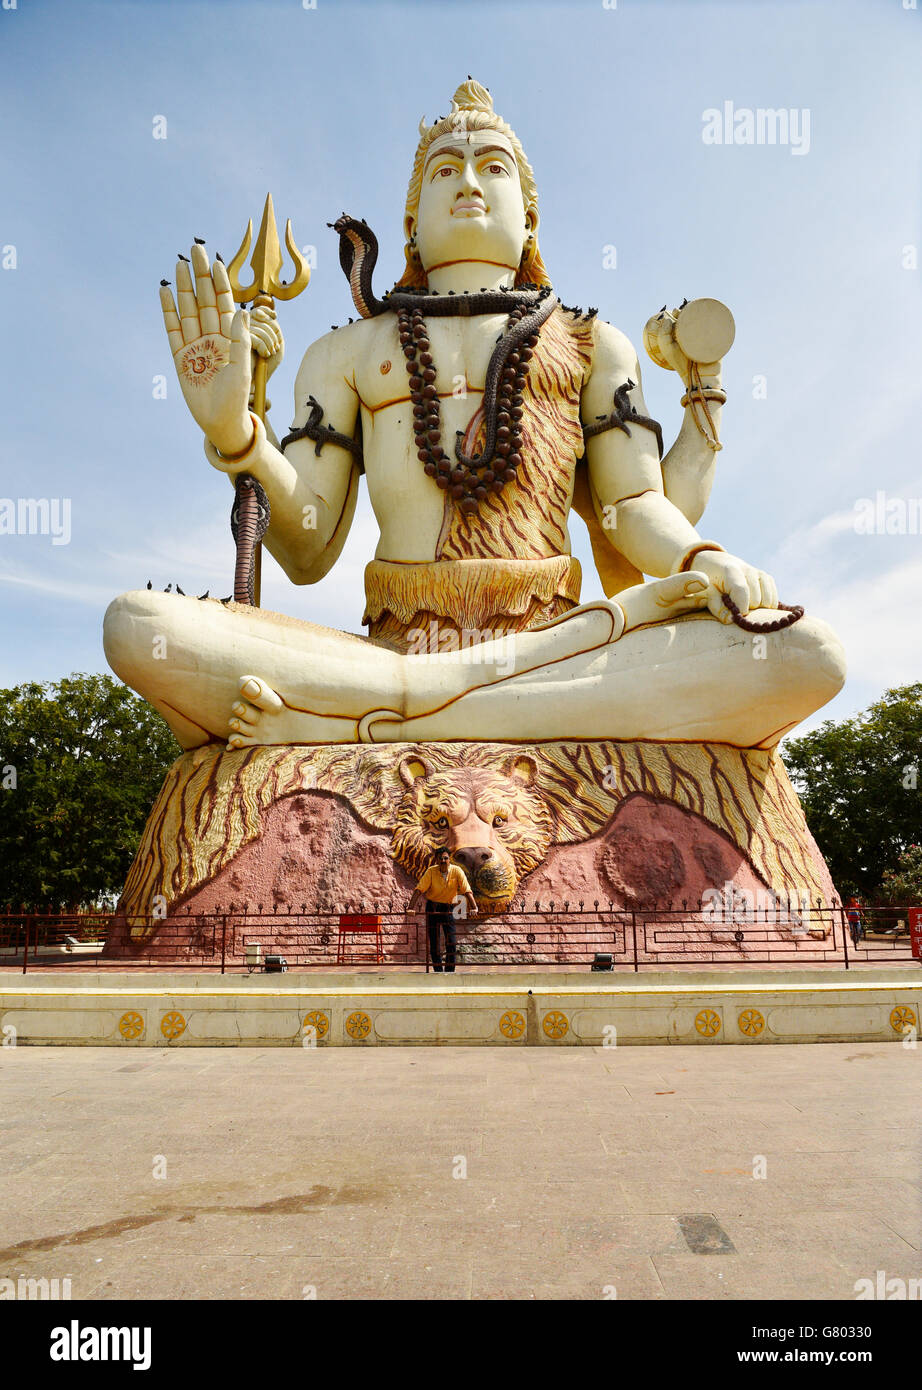 Un homme debout au bas de l'immense statue du dieu Shiva qui bénit bienvenue à tous les pèlerins visitant Nageshwar temple dans le Gujarat. Banque D'Images